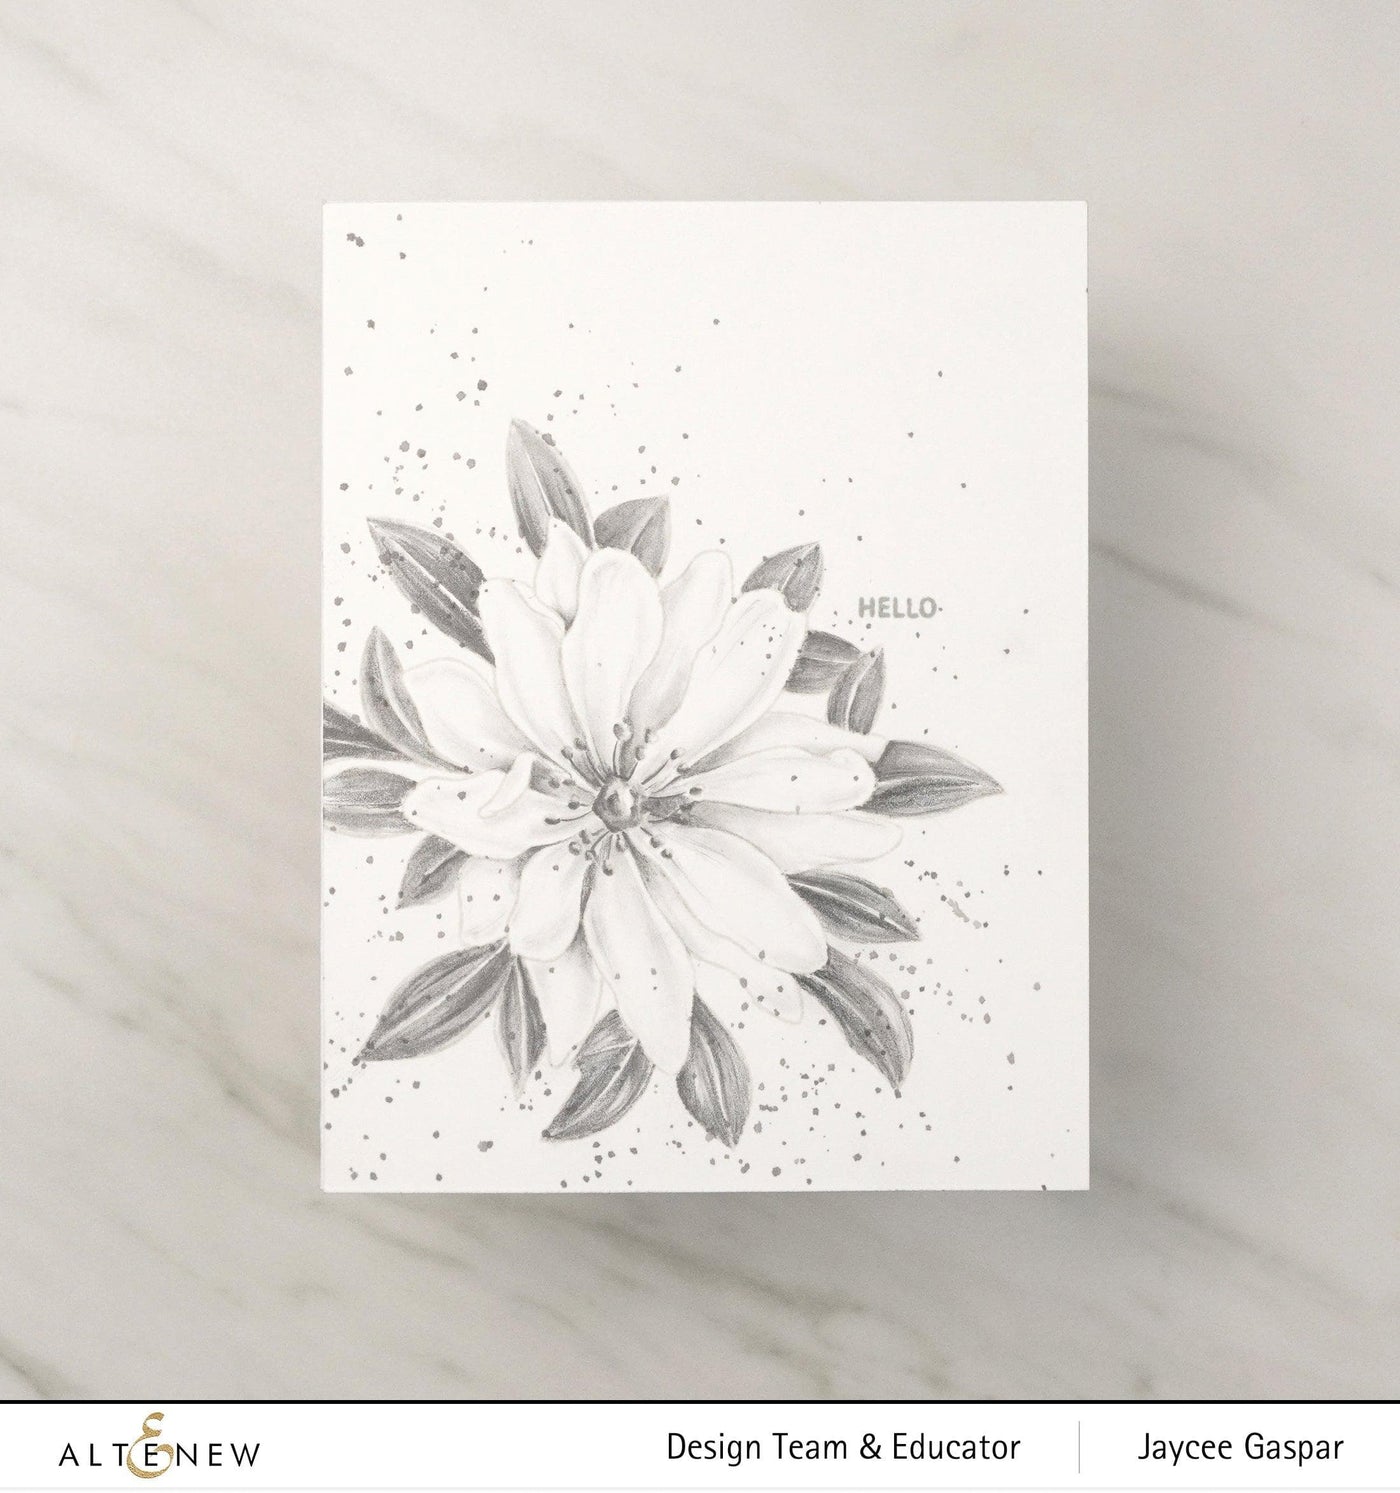 Altenew Stamp & Coloring Pencil Bundle Paint-A-Flower: Wood Anemone & Woodless Coloring Pencils Bundle